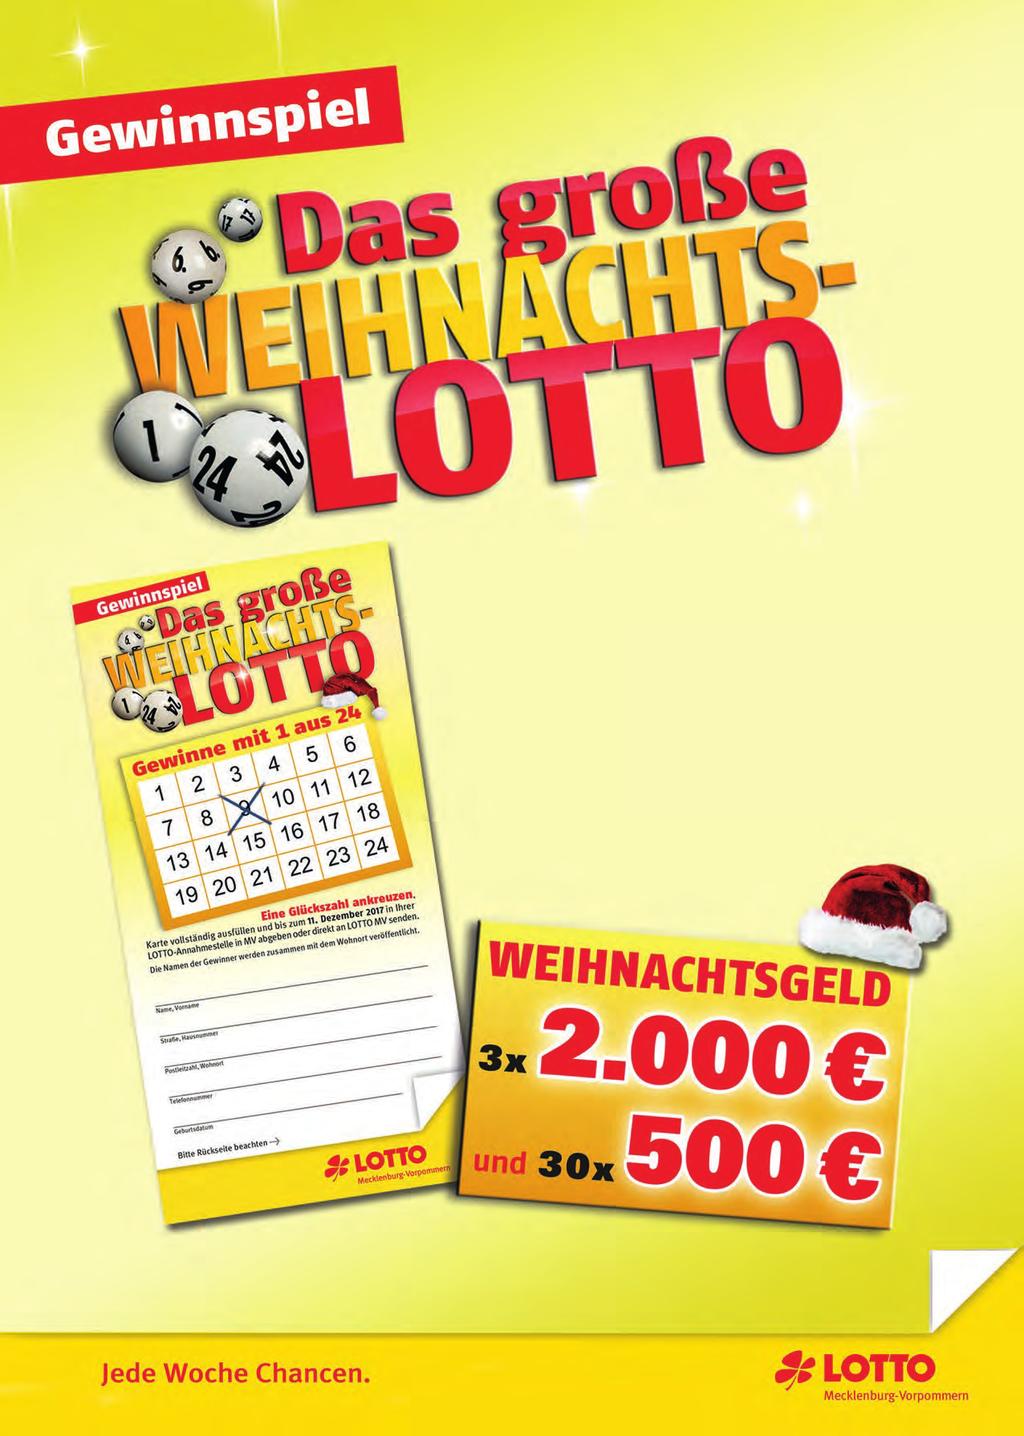 Tipp der Woche www.lottomv.de Glückszahl gesucht! Einfach auf der Gewinnspielkarte Glückszahl ankreuzen, Teilnahmedaten vollständig ausfüllen und direkt in der LOTTO-Annahmestelle abgeben.